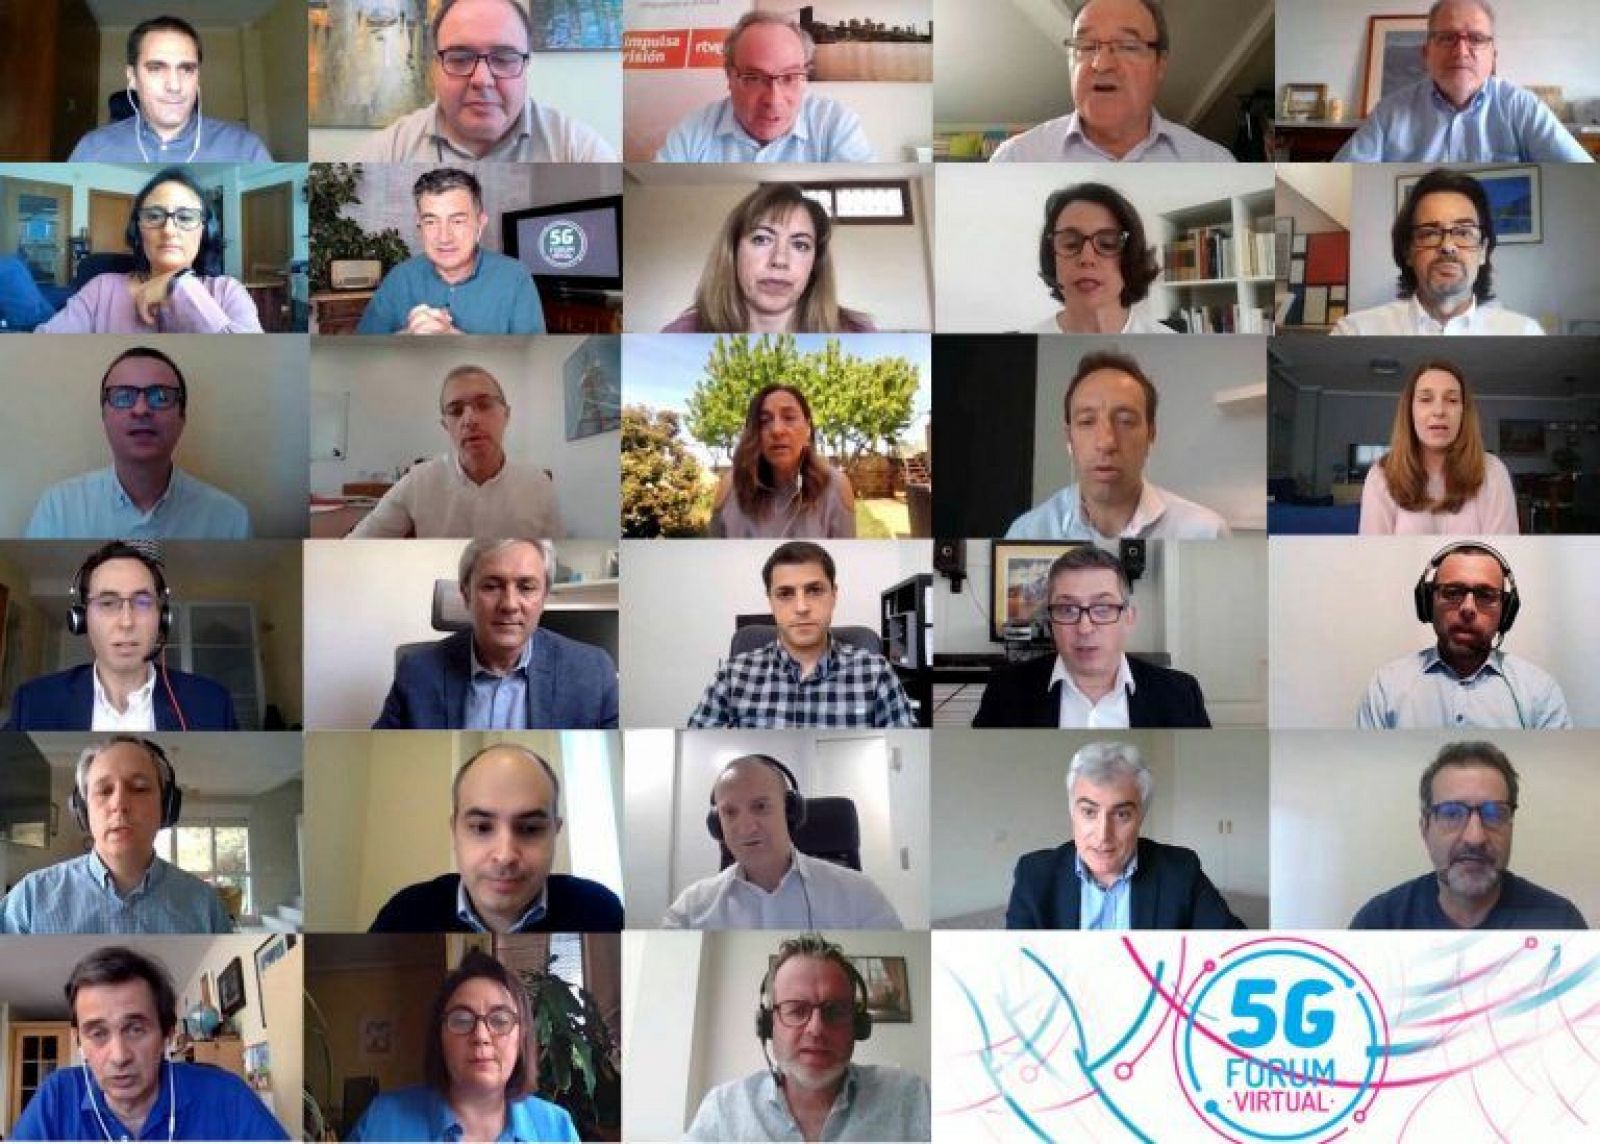 Impulsa Visin RTVE patrocina y participa en el 5G FORUM Virtual 2020